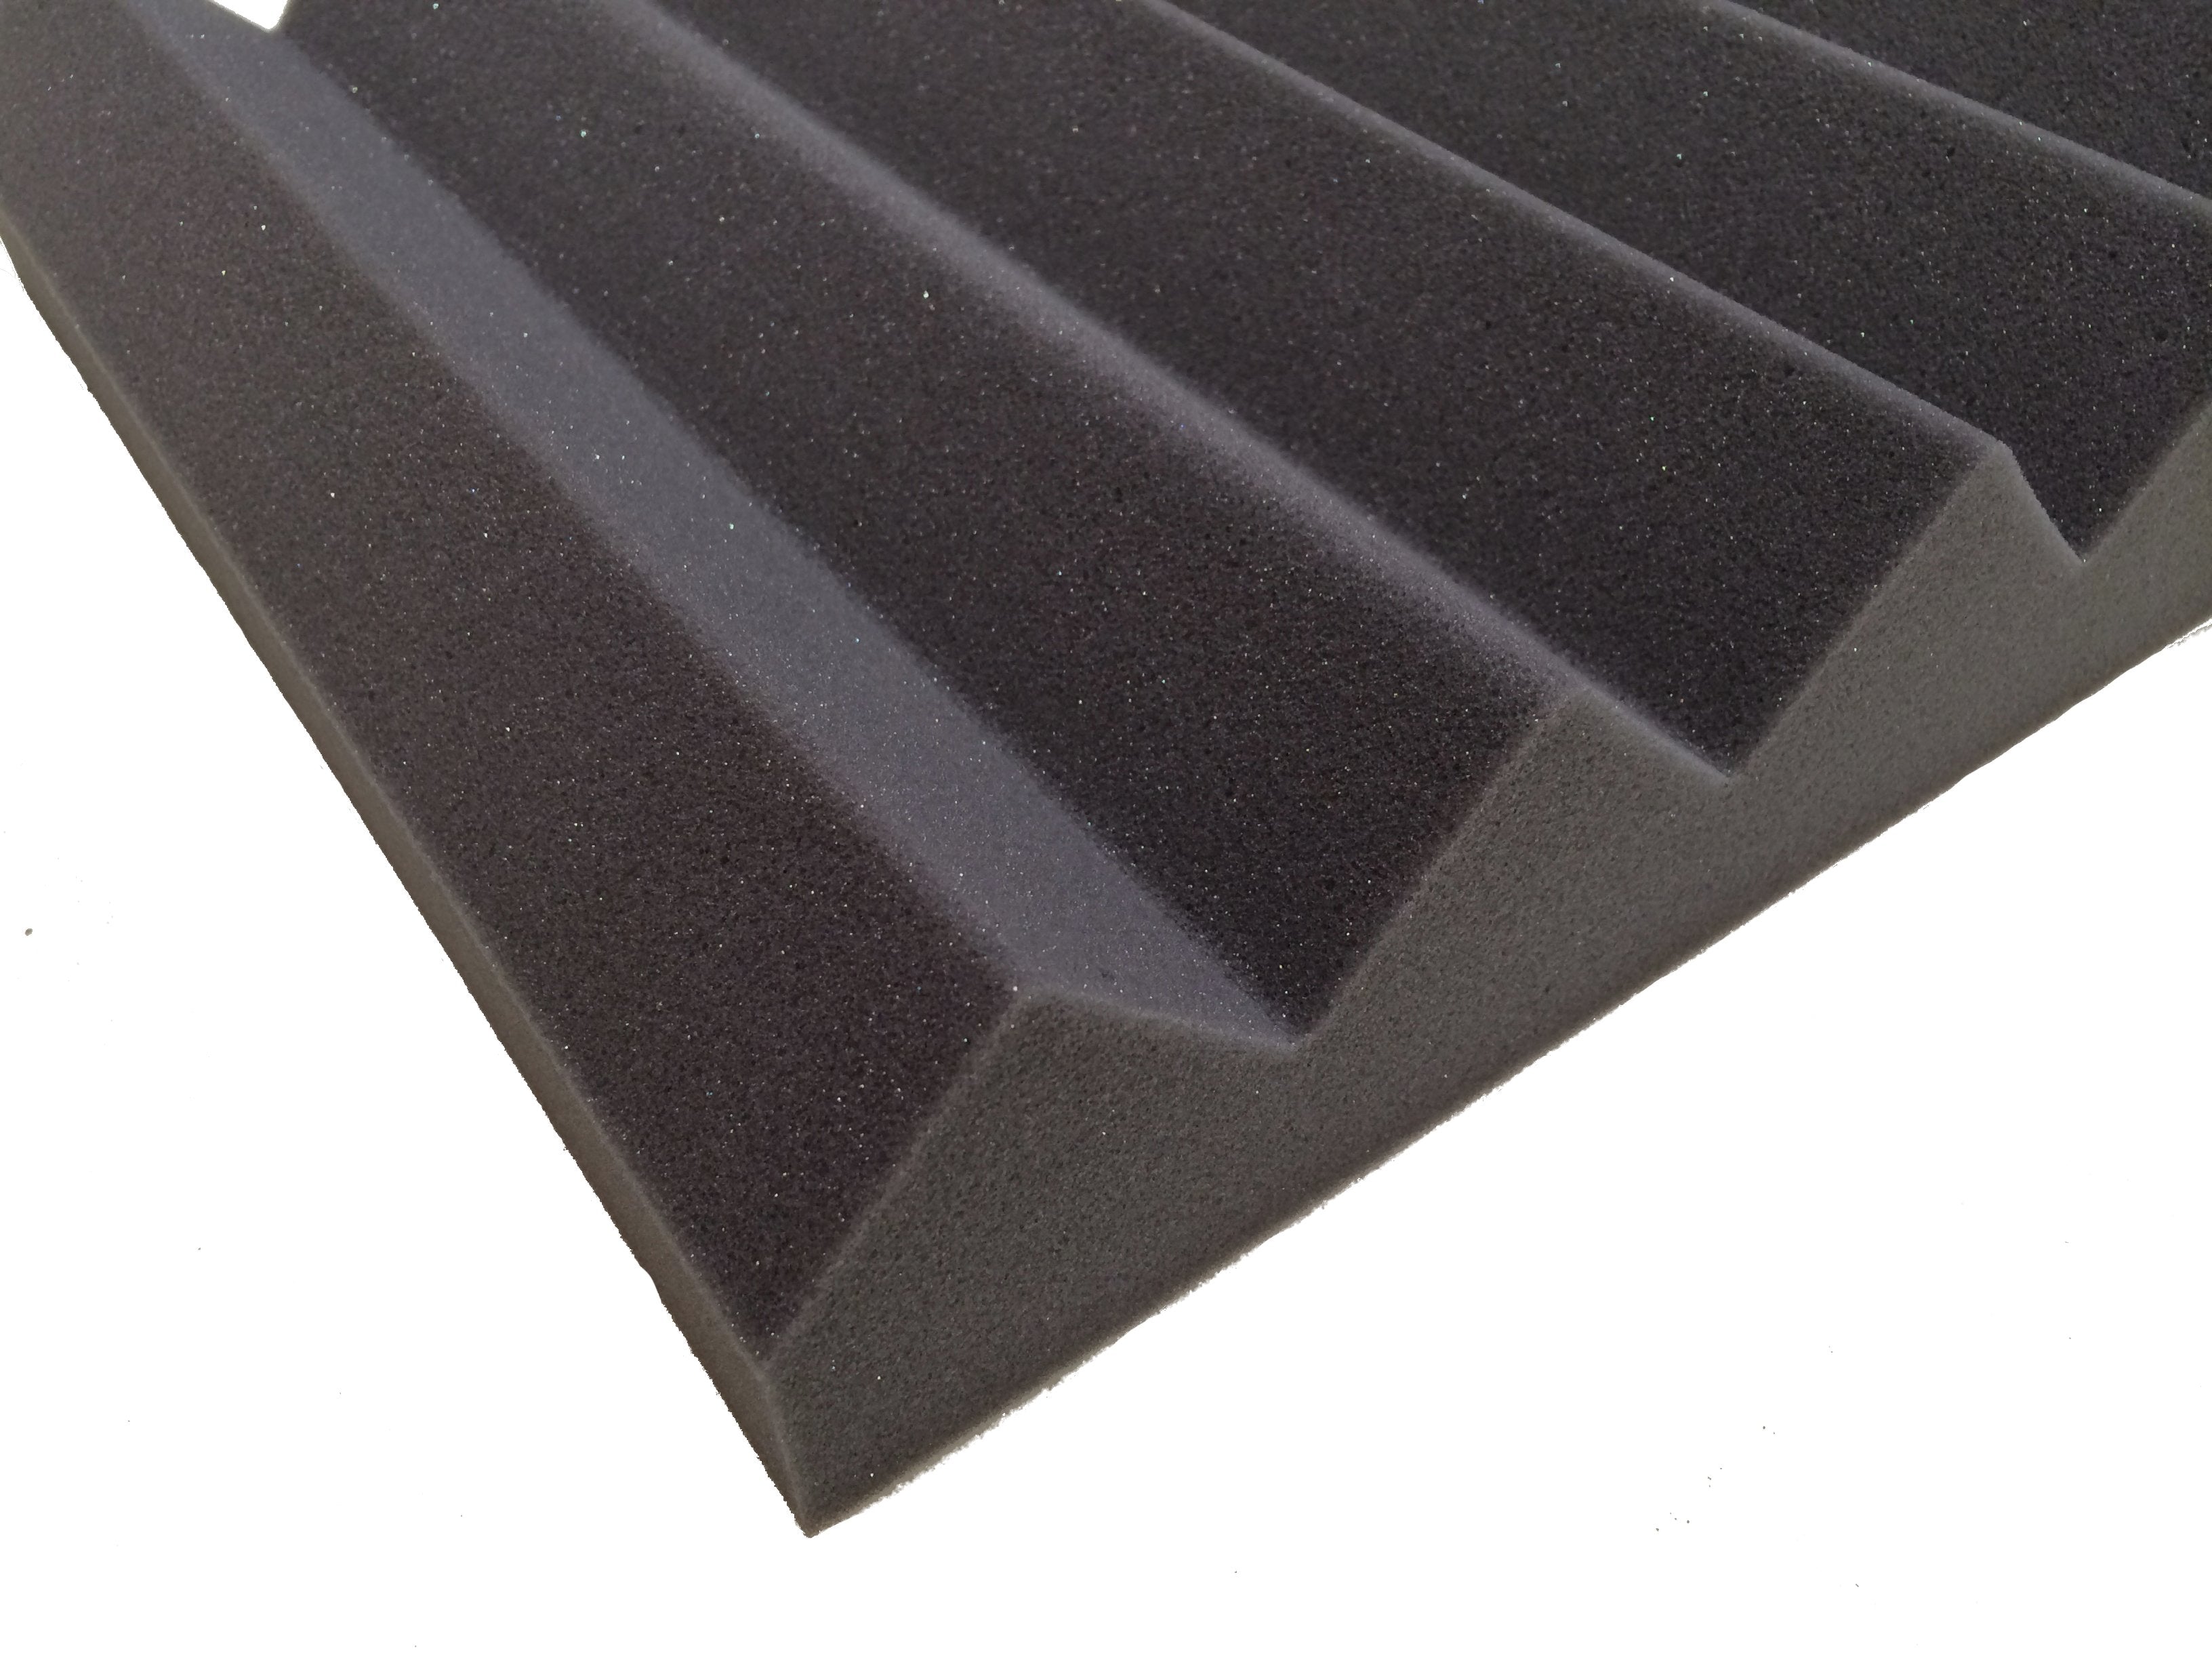 Wedge PRO 30"x15" Acoustic Studio Foam Tile Pack - Advanced Acoustics